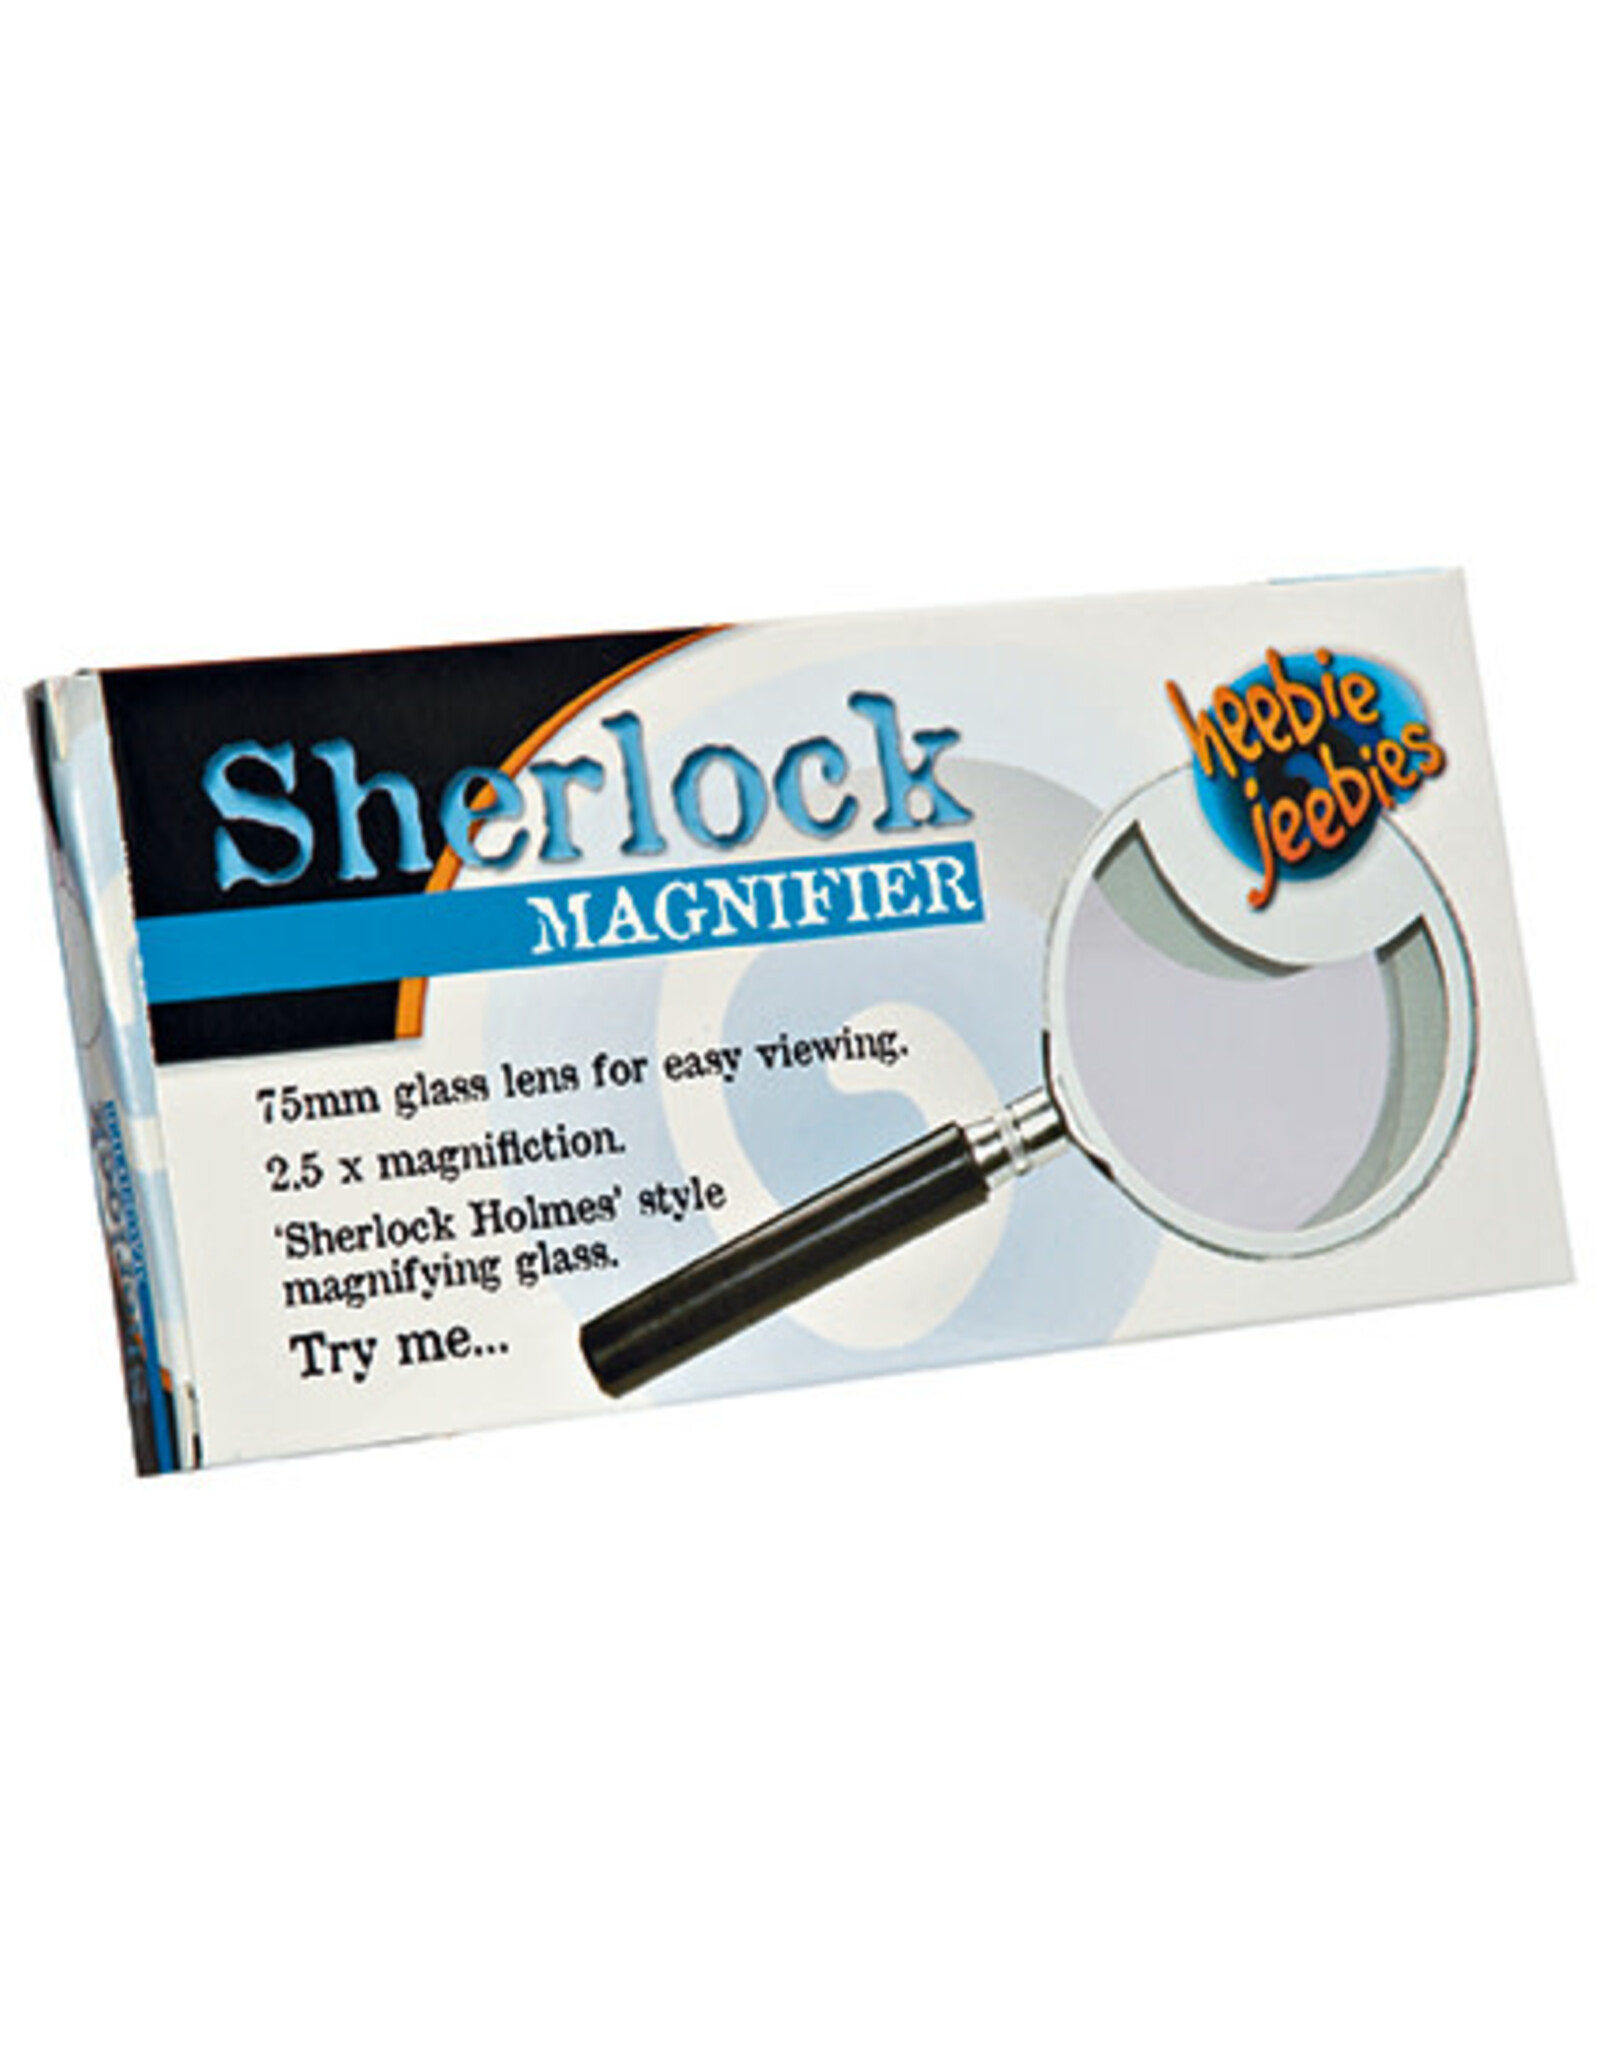 heebies jeebies Sherlock Magnifier